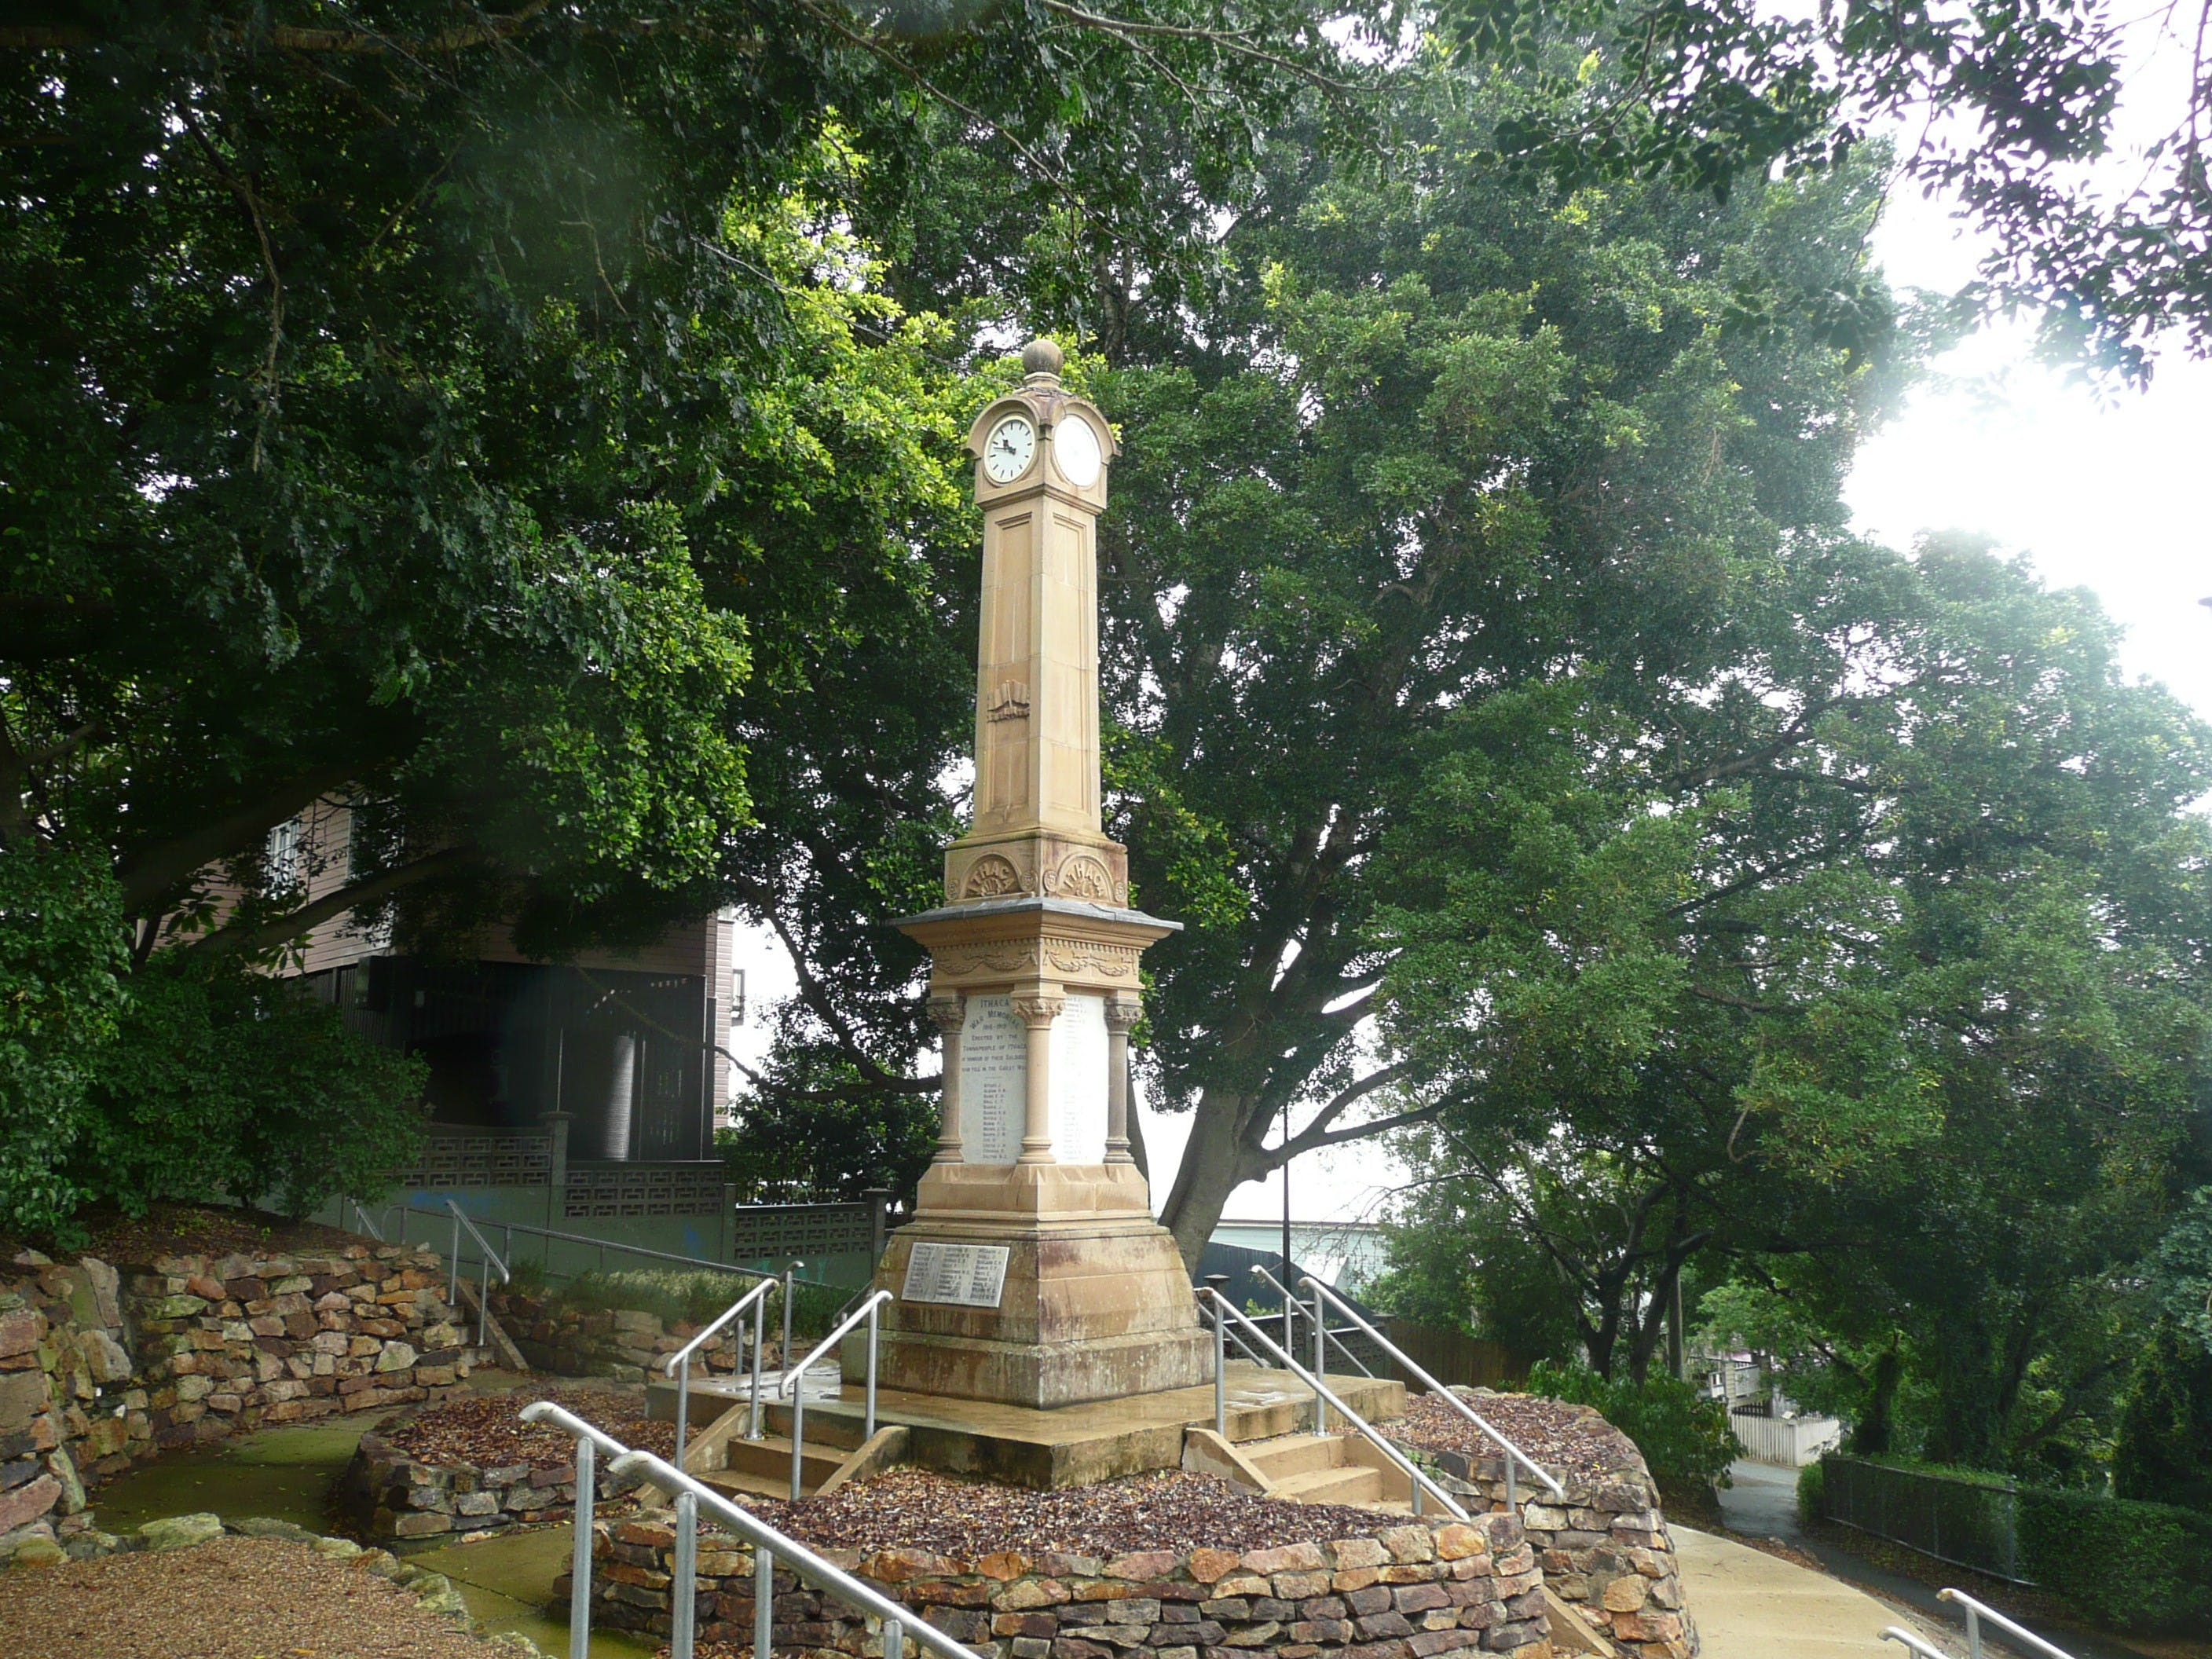 Ithaca War Memorial and Park - Lightning Ridge Tourism